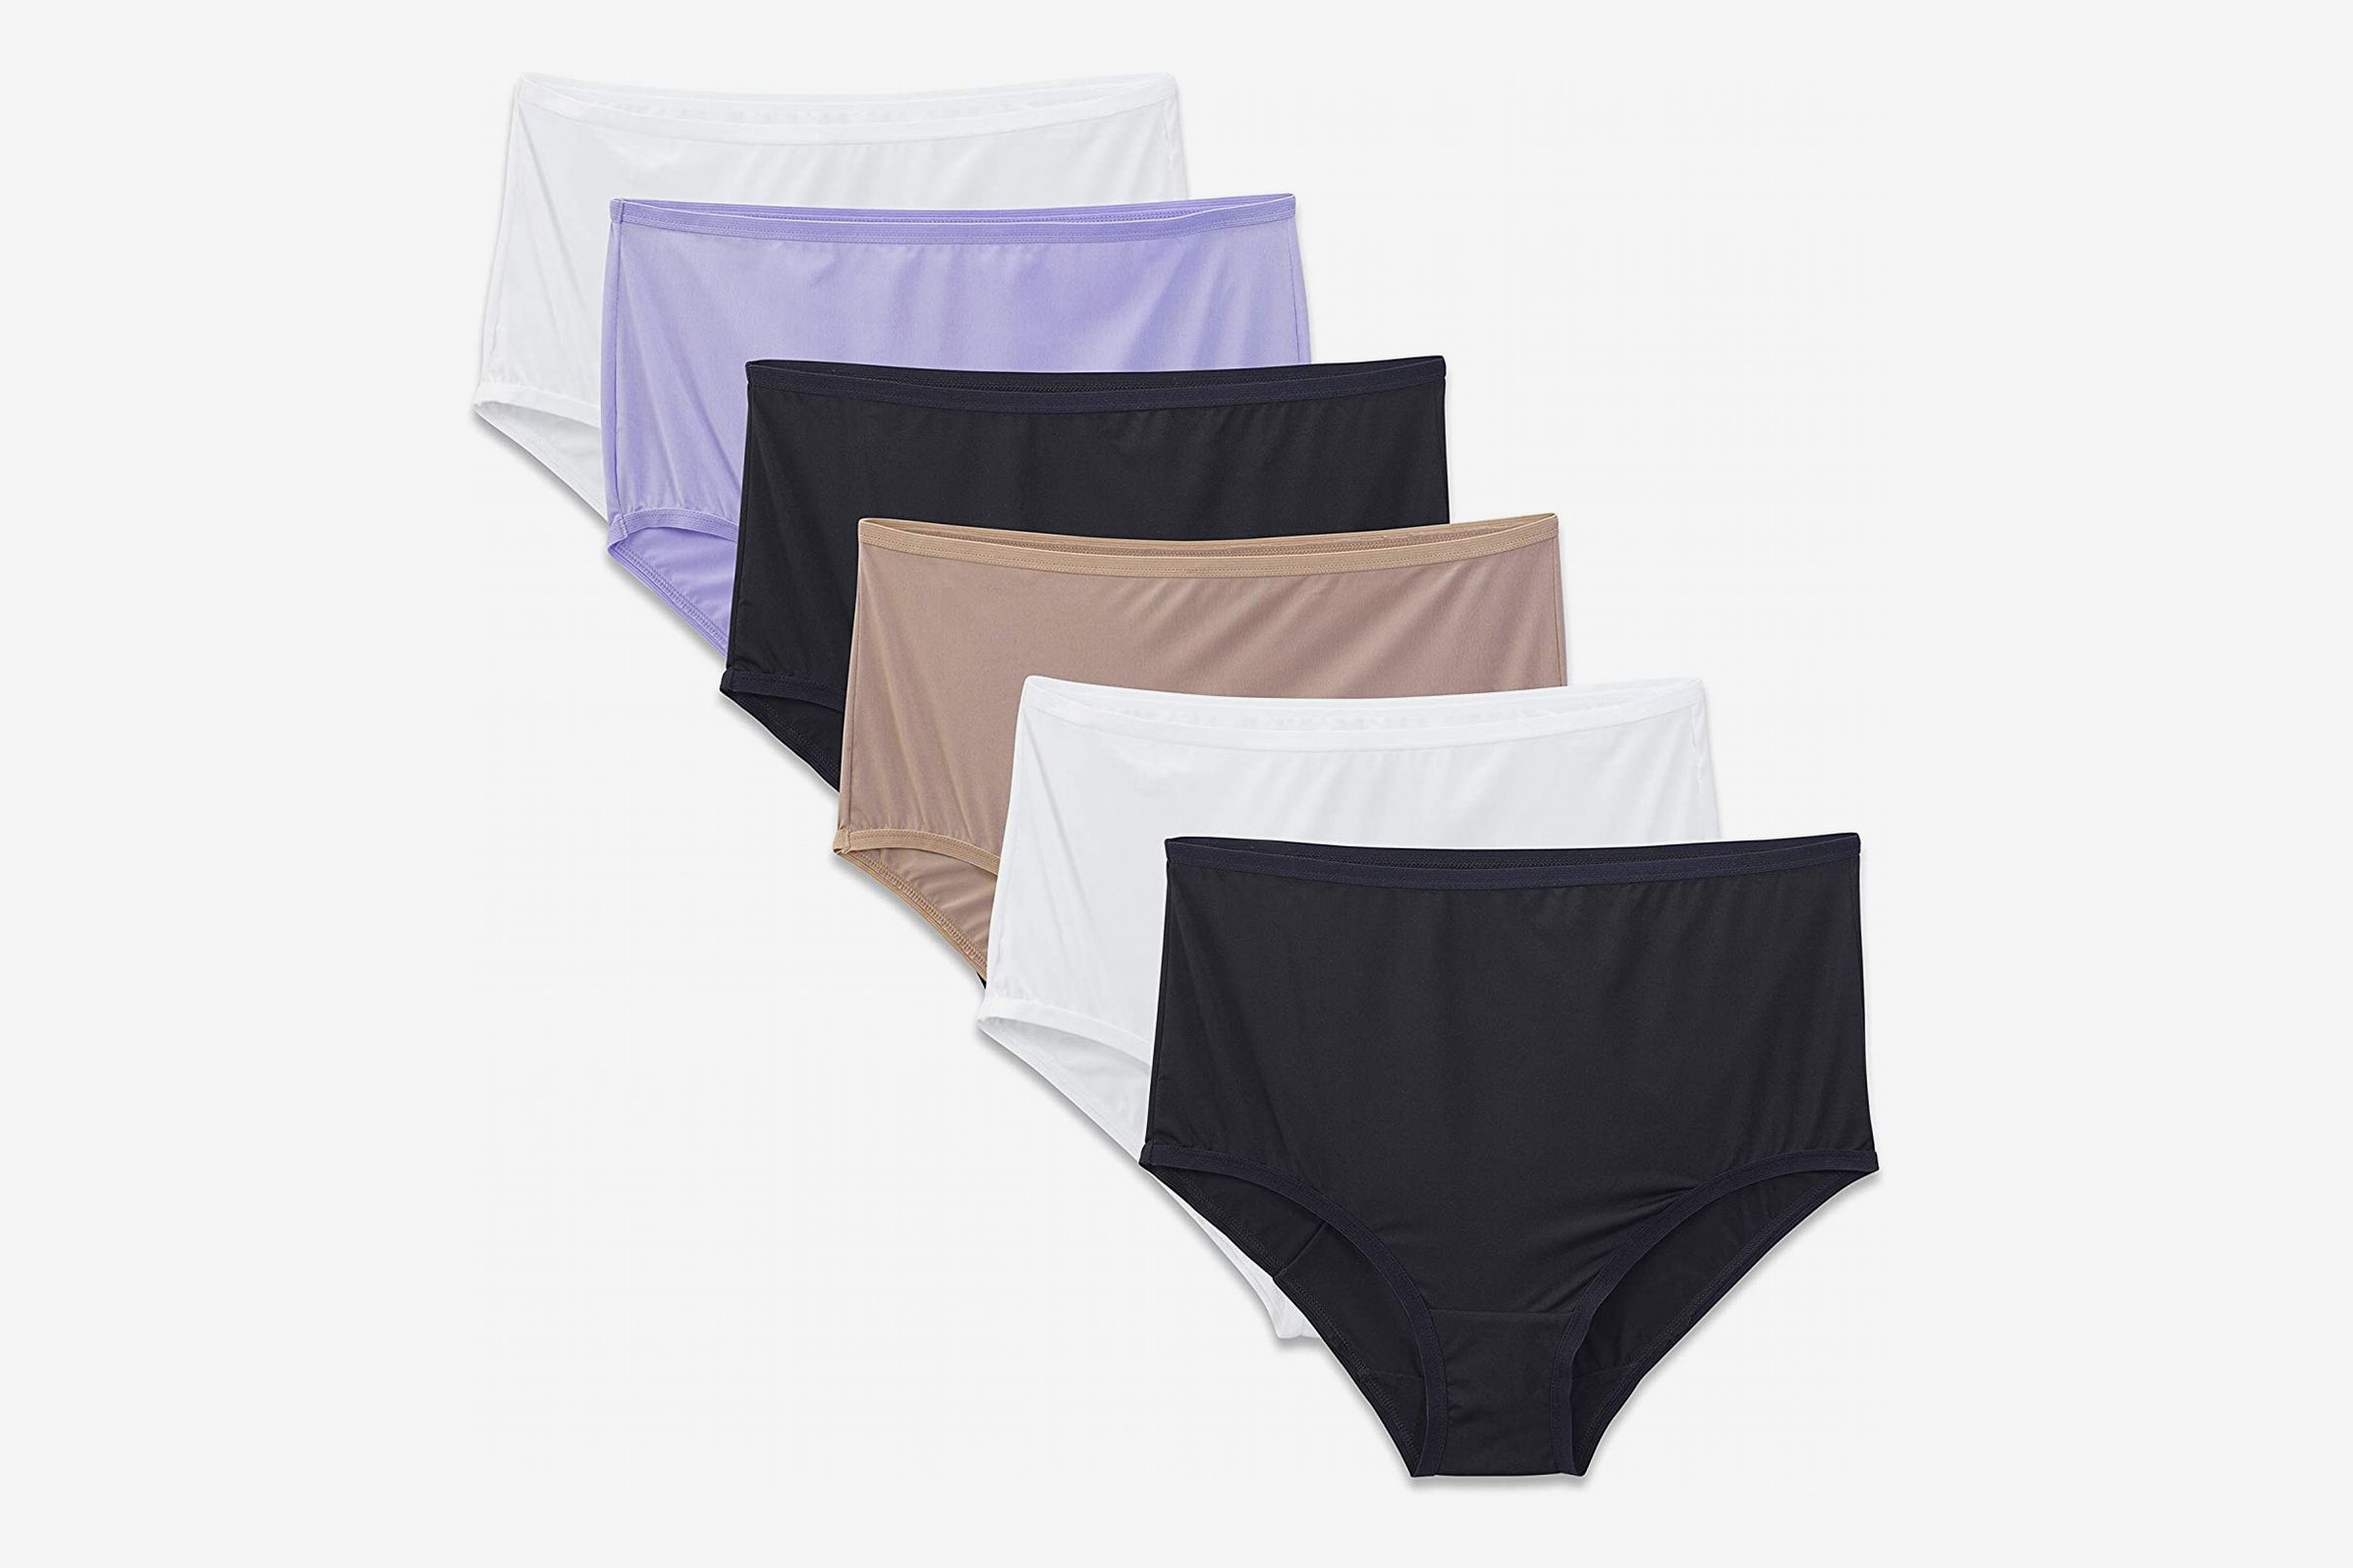 12 Best Women's Underwear to Buy in Bulk